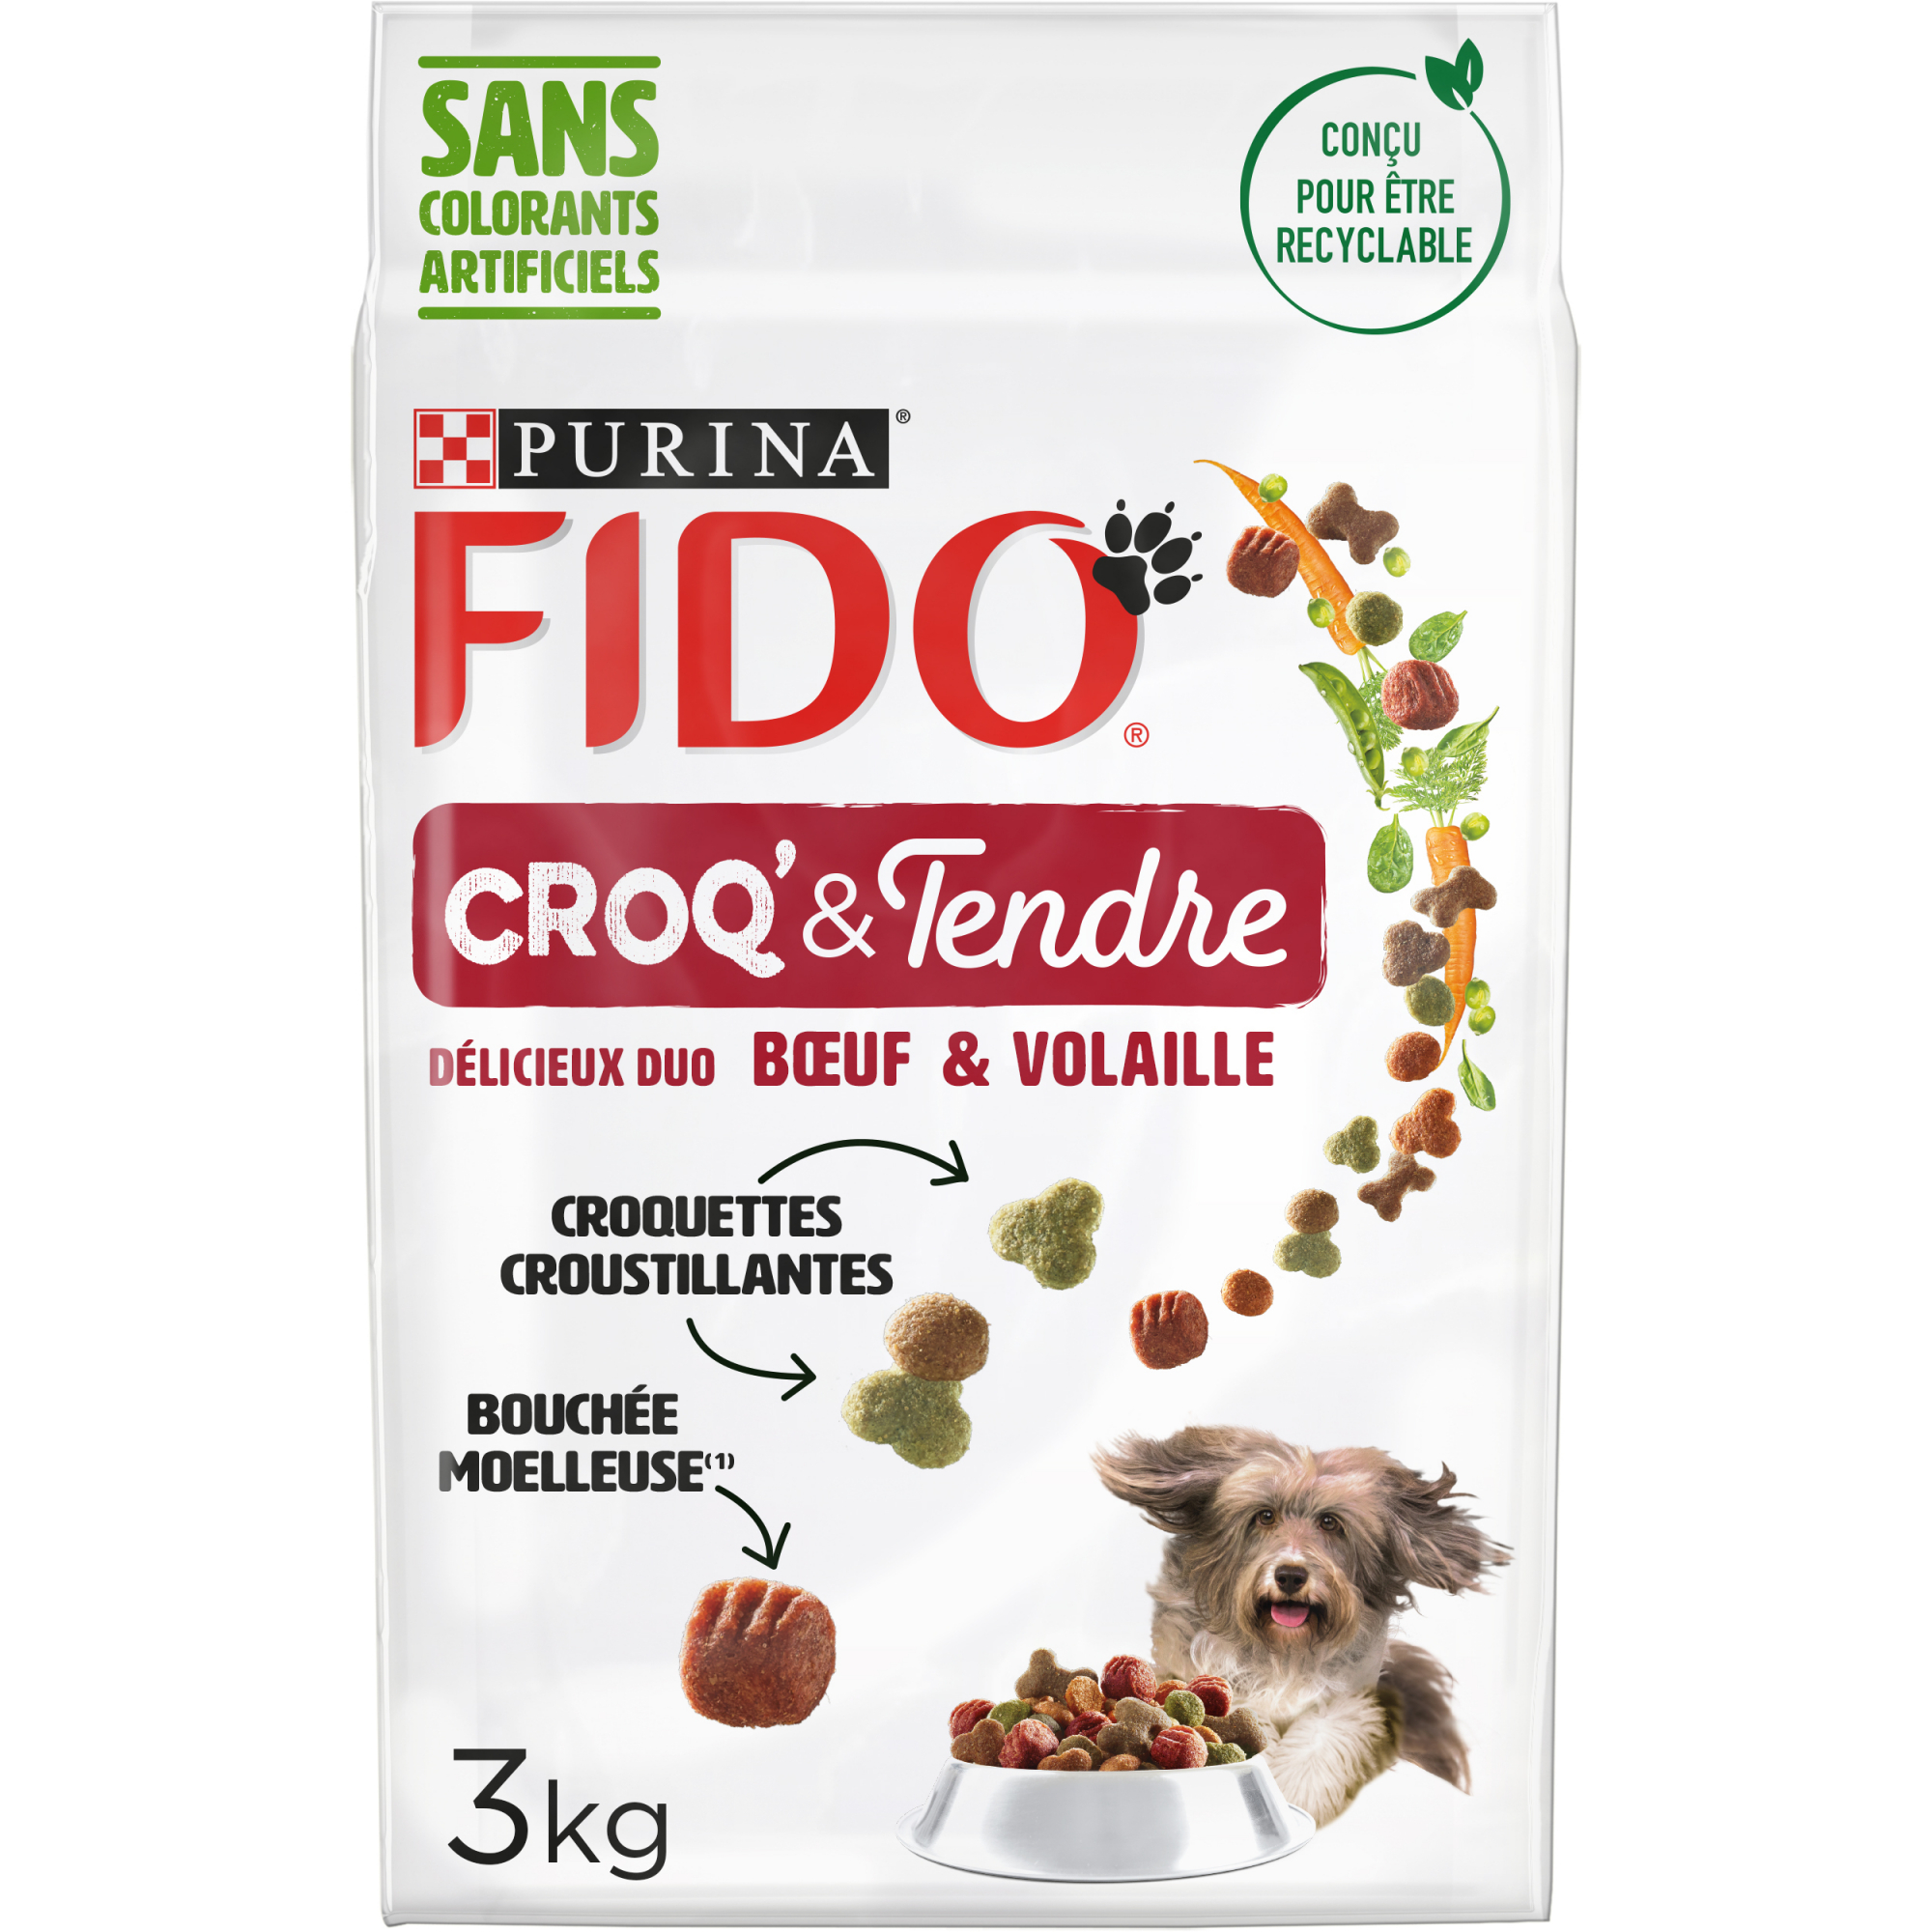 FIDO Croq' & Tendre - 2 Geschmacksrichtungen